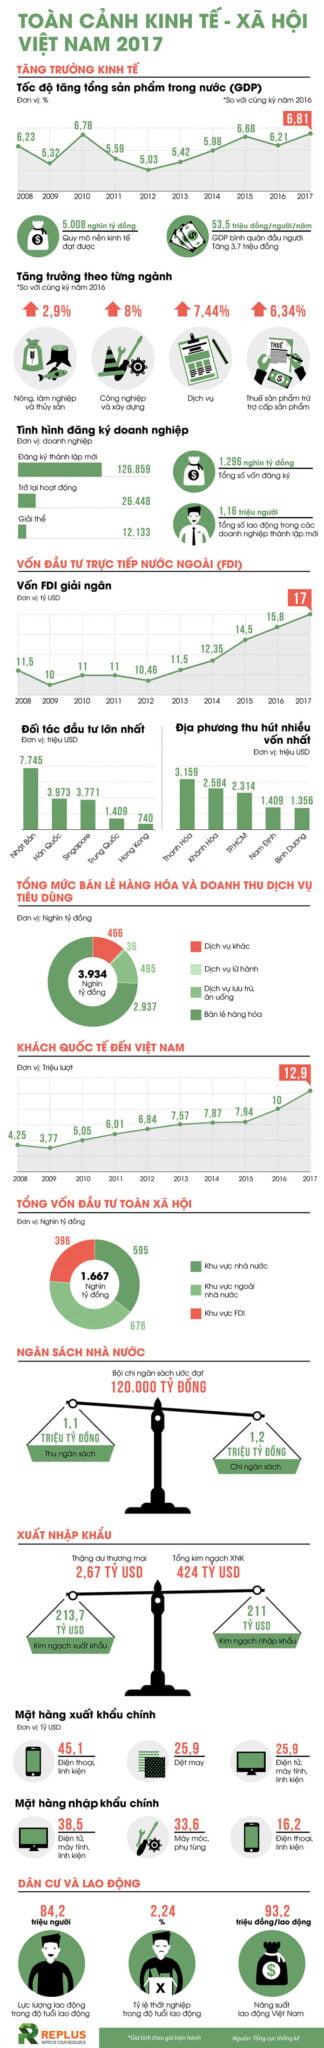 [Infographic] Kinh tế - Xã hội Việt Nam 2017 1